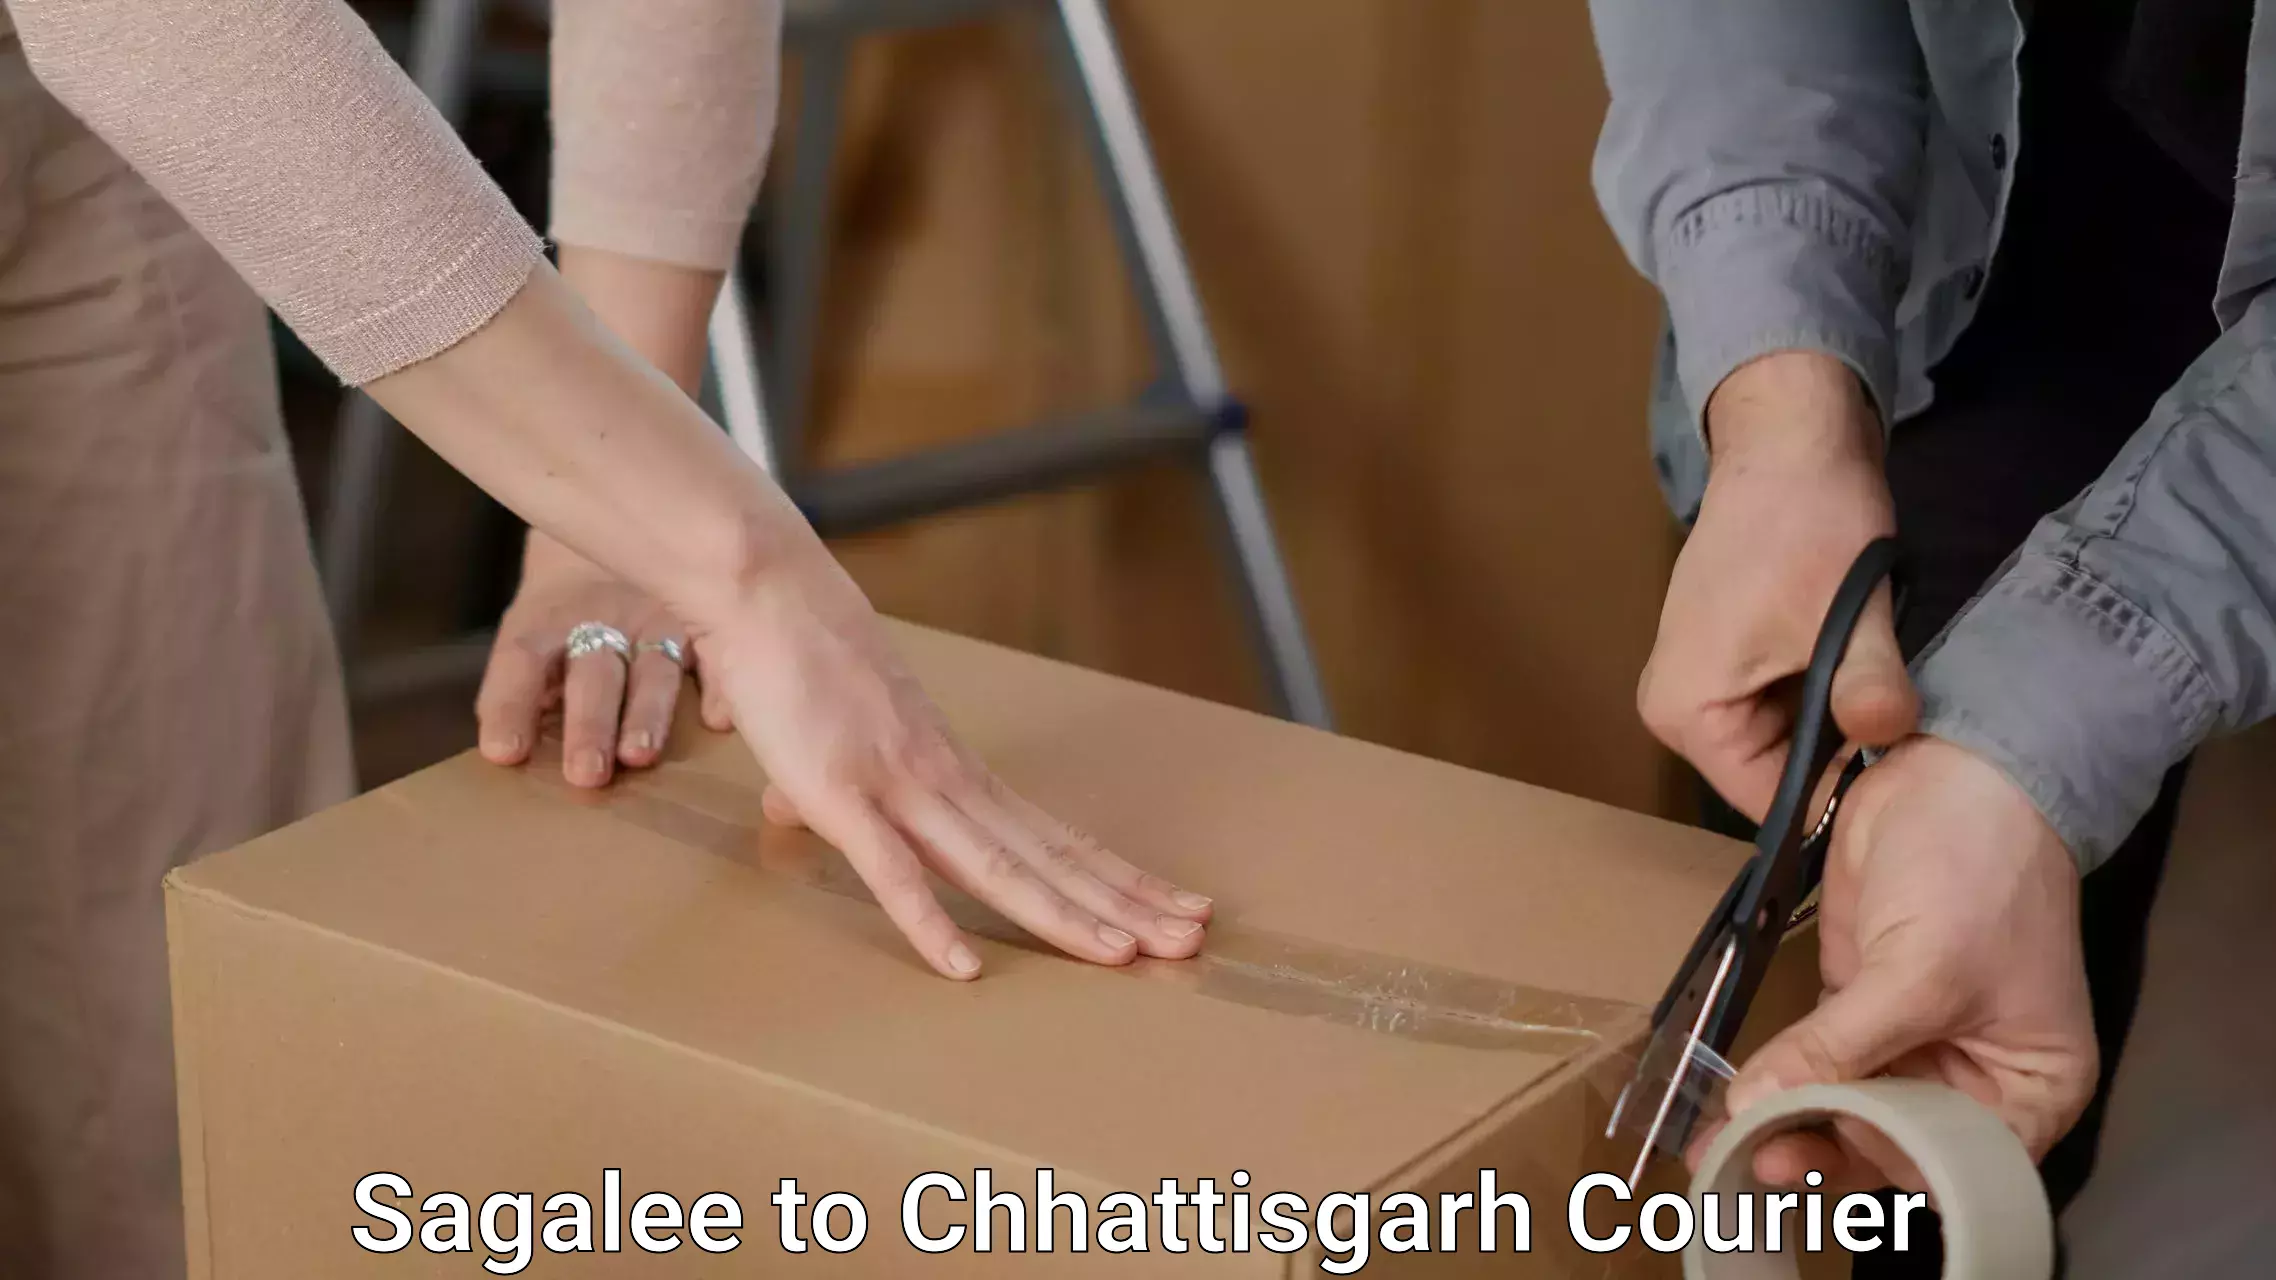 Quality moving company Sagalee to Chhattisgarh